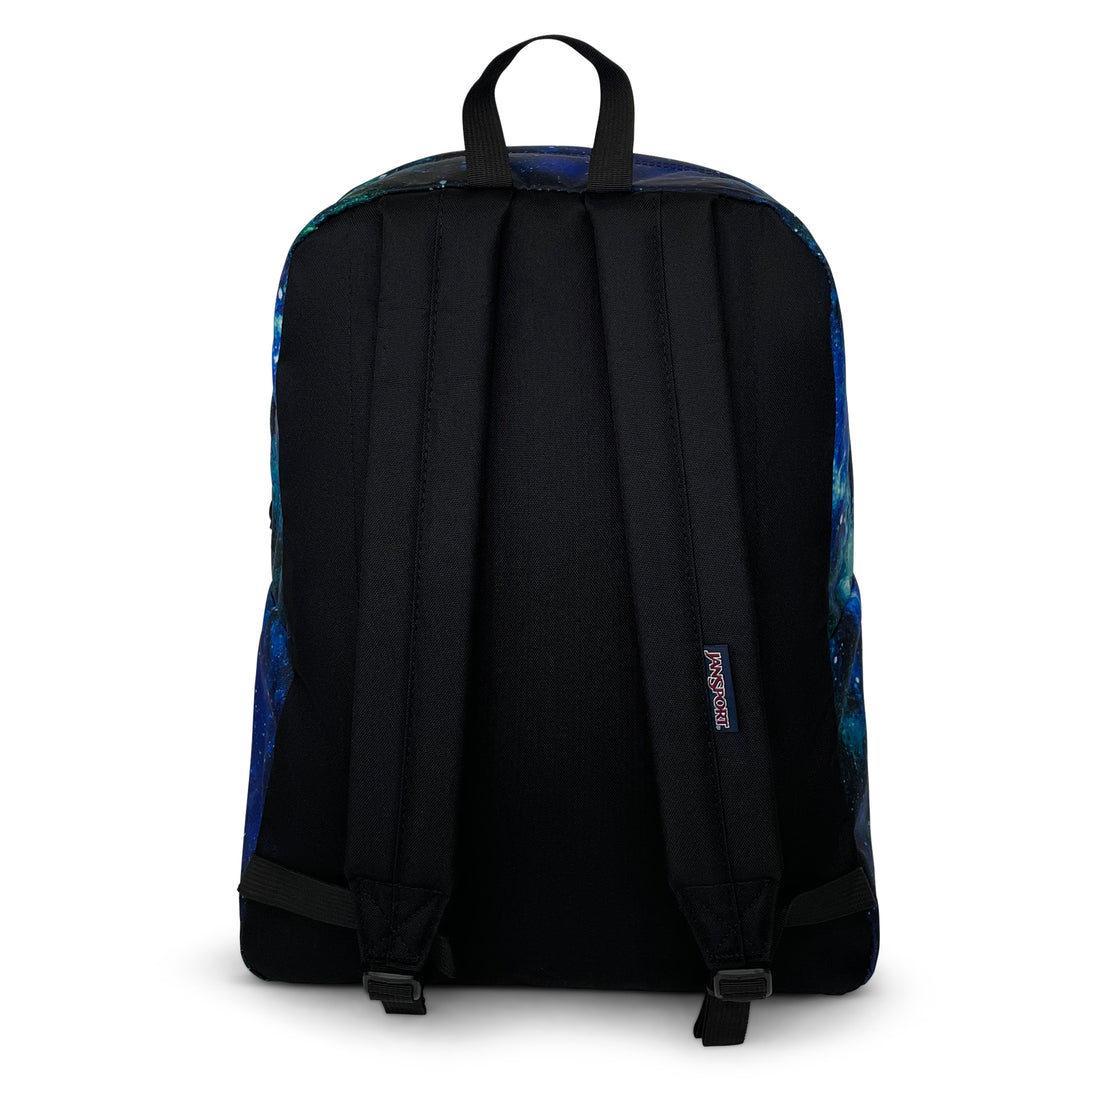 Superbreak One Backpack-Backpack-Jansport-Cyberspace Galaxy-SchoolBagsAndStuff